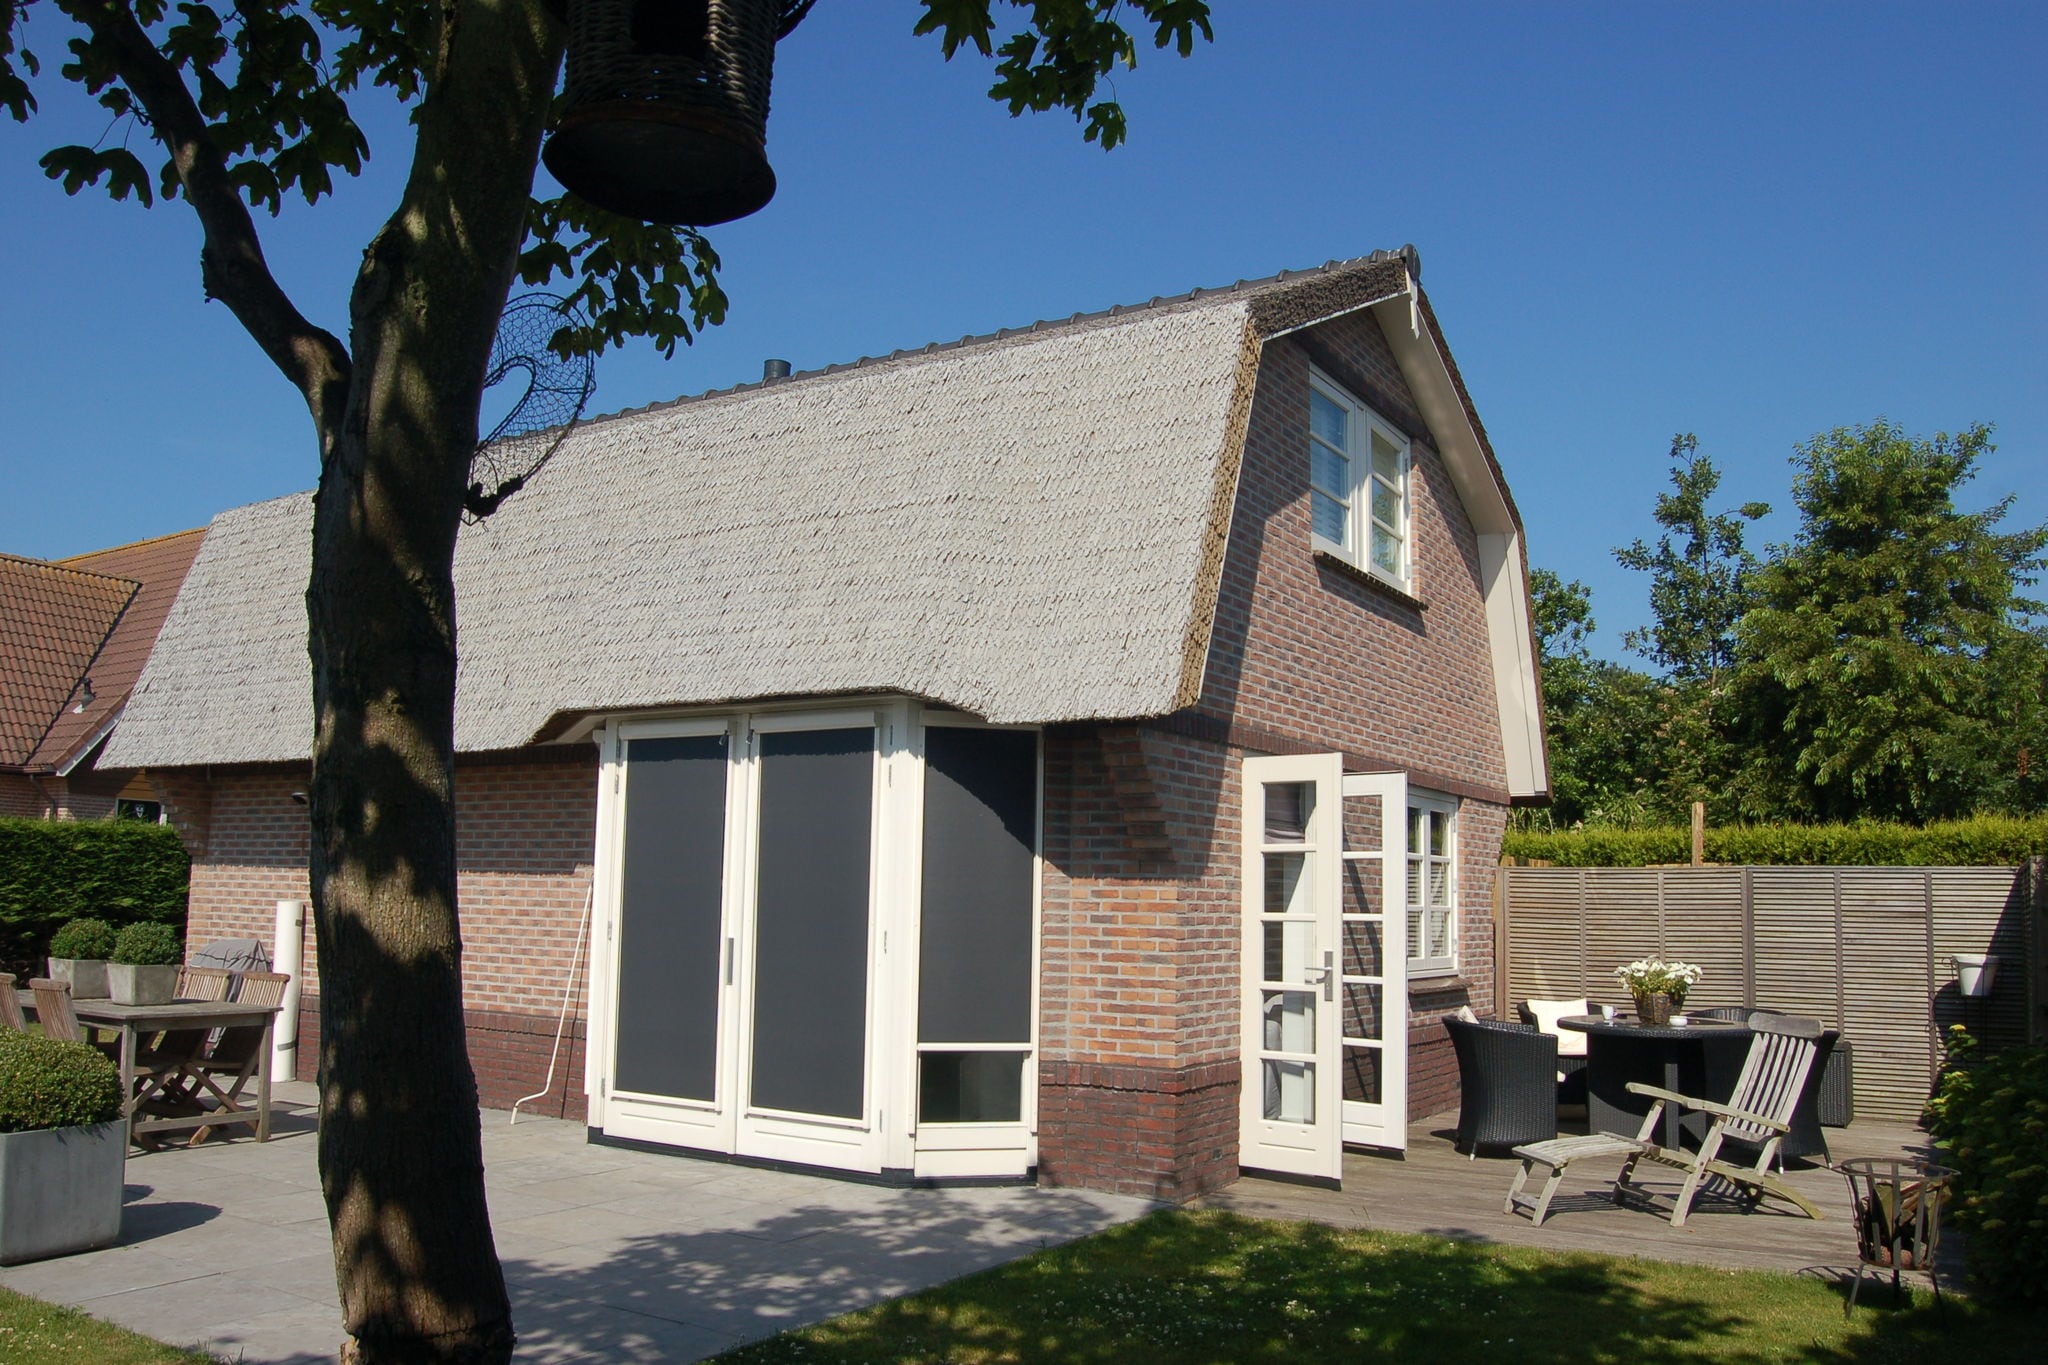 Maison de vacances confortable près de la palge à Noordwijk